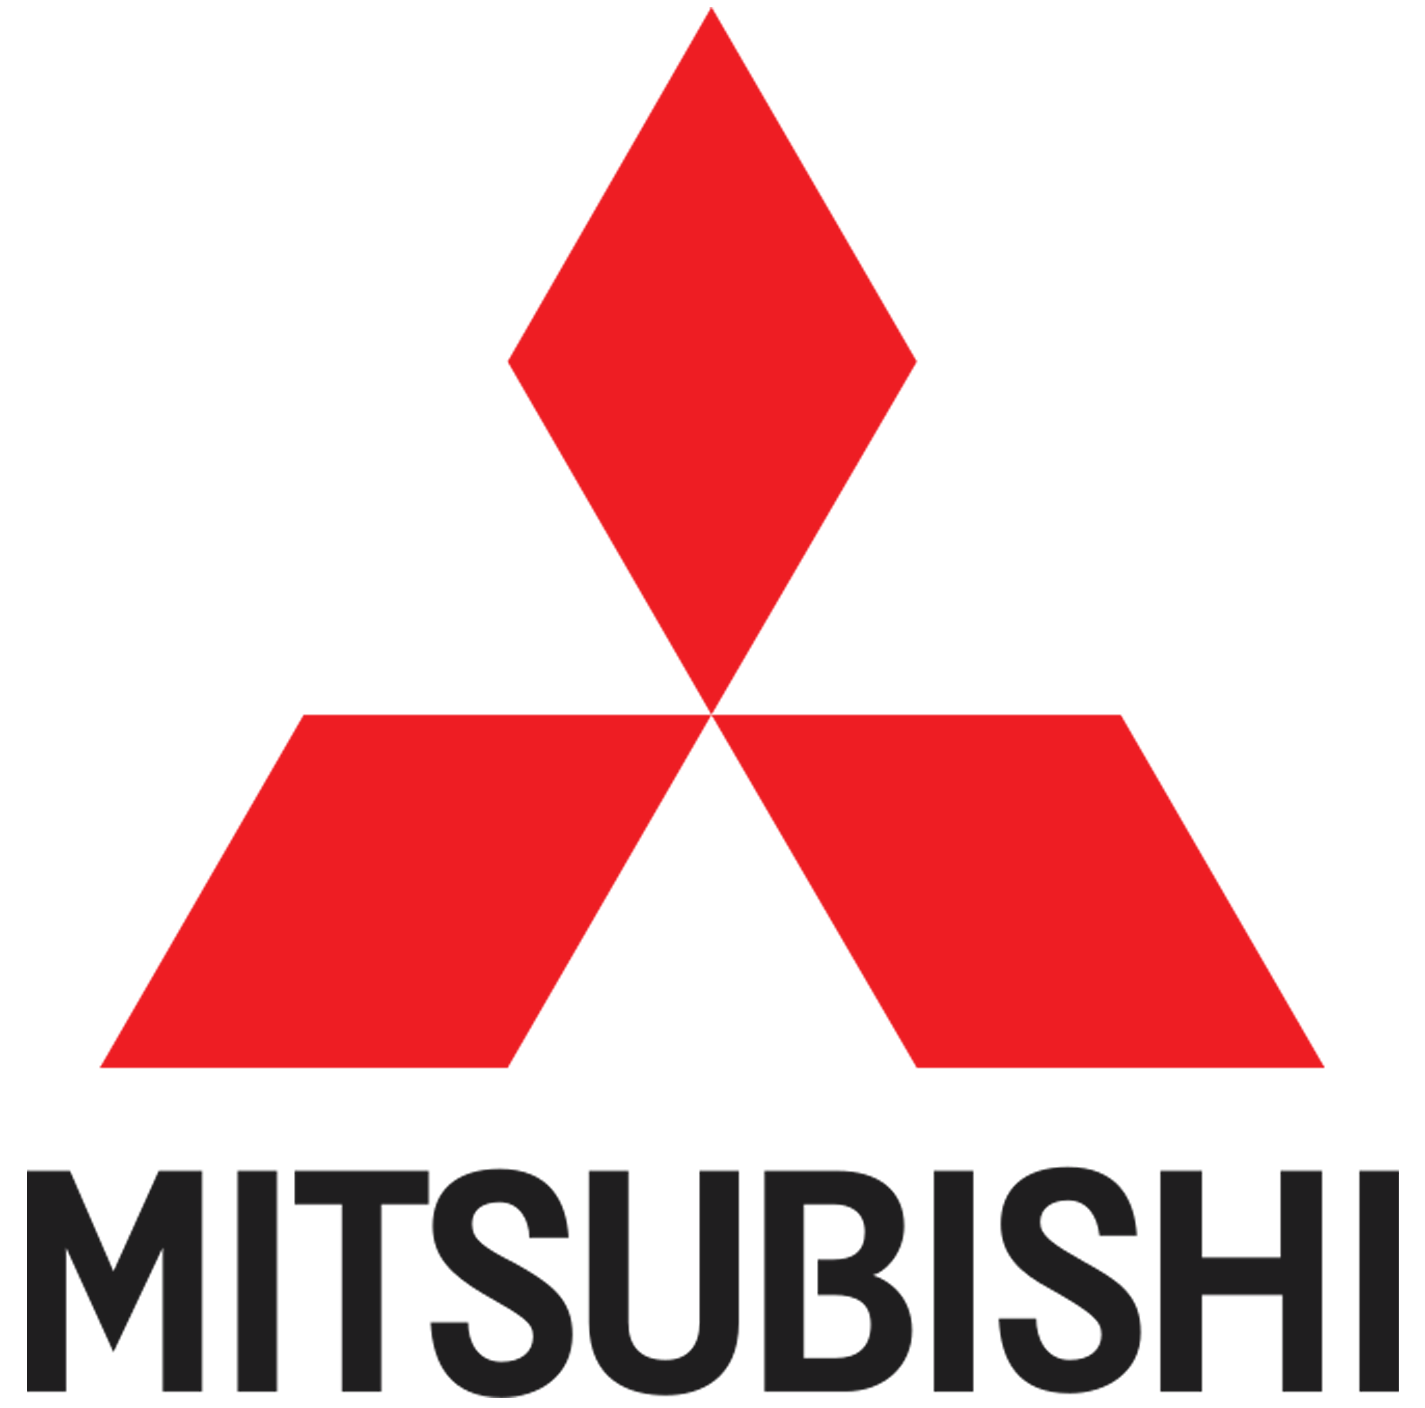 Mitsubishi-logo